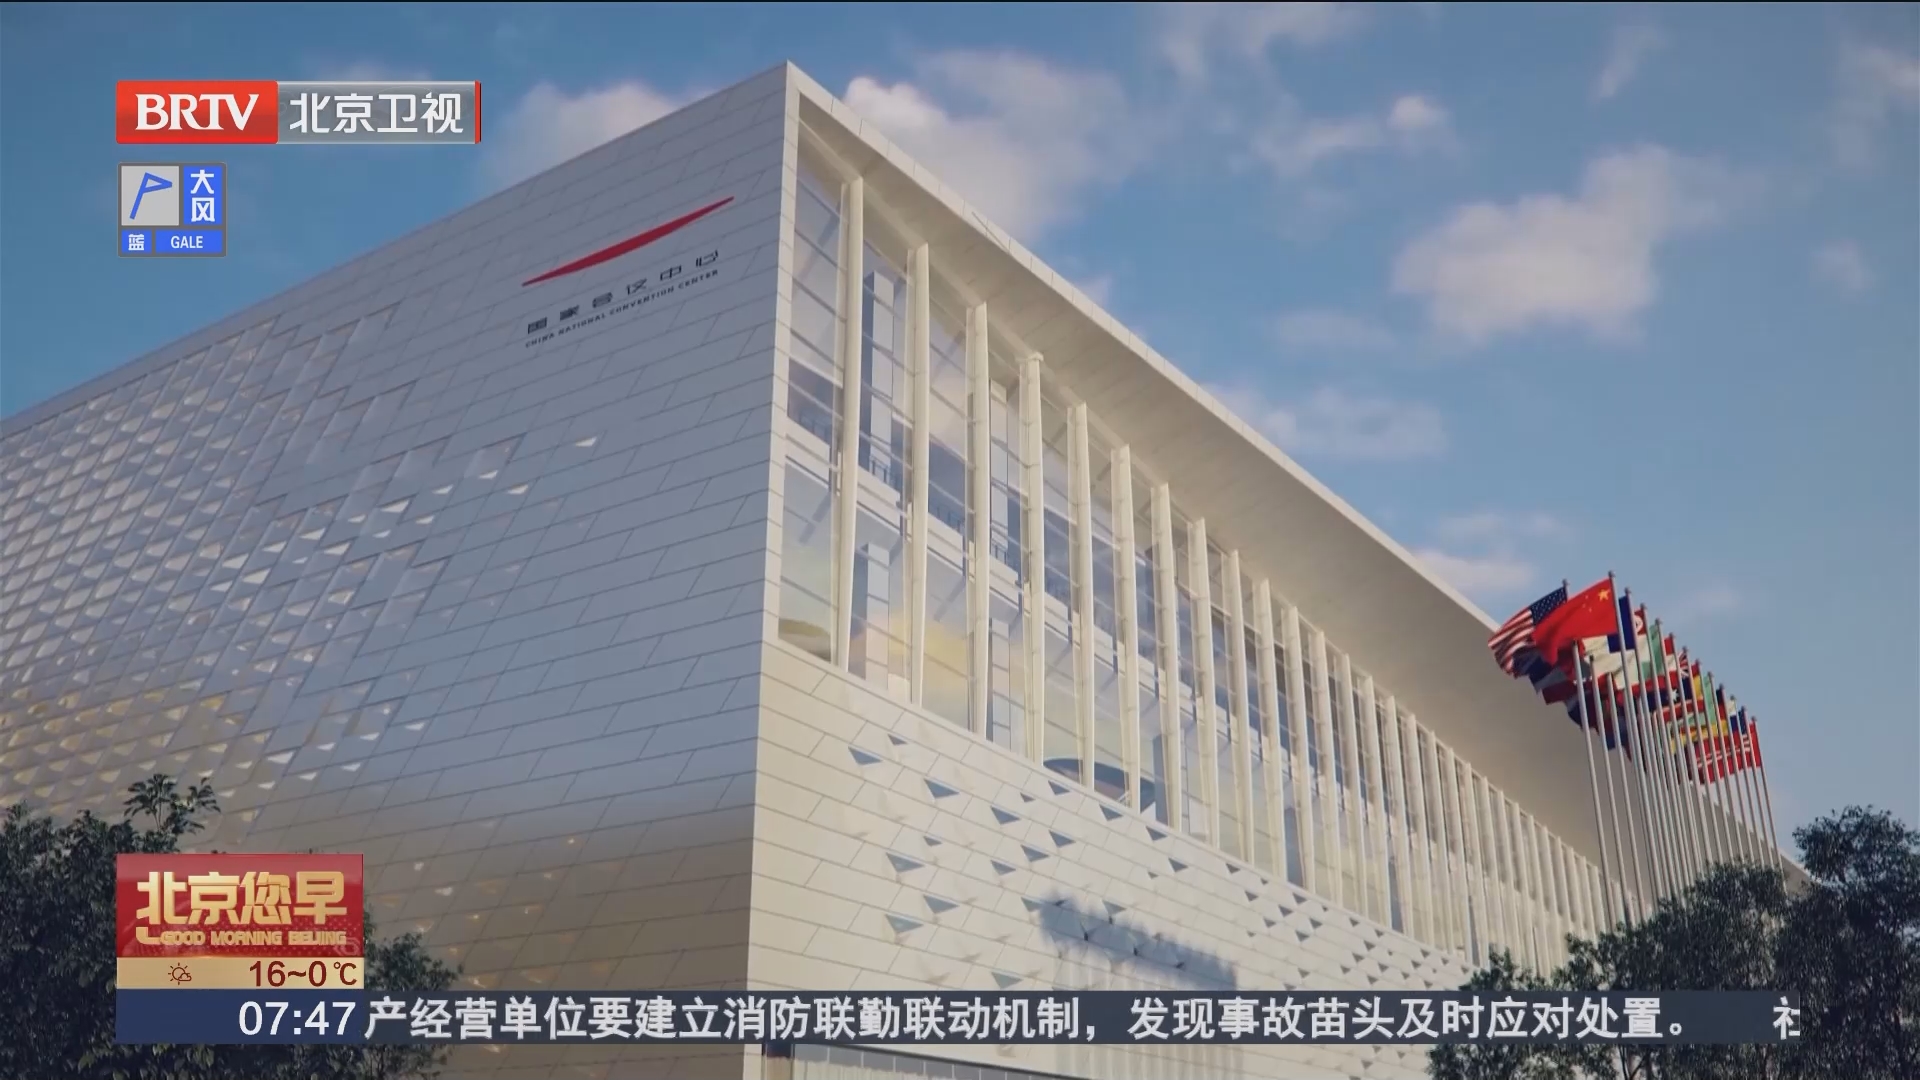 [北京您早]国家会议中心二期工程全面进入室内精装修施工阶段